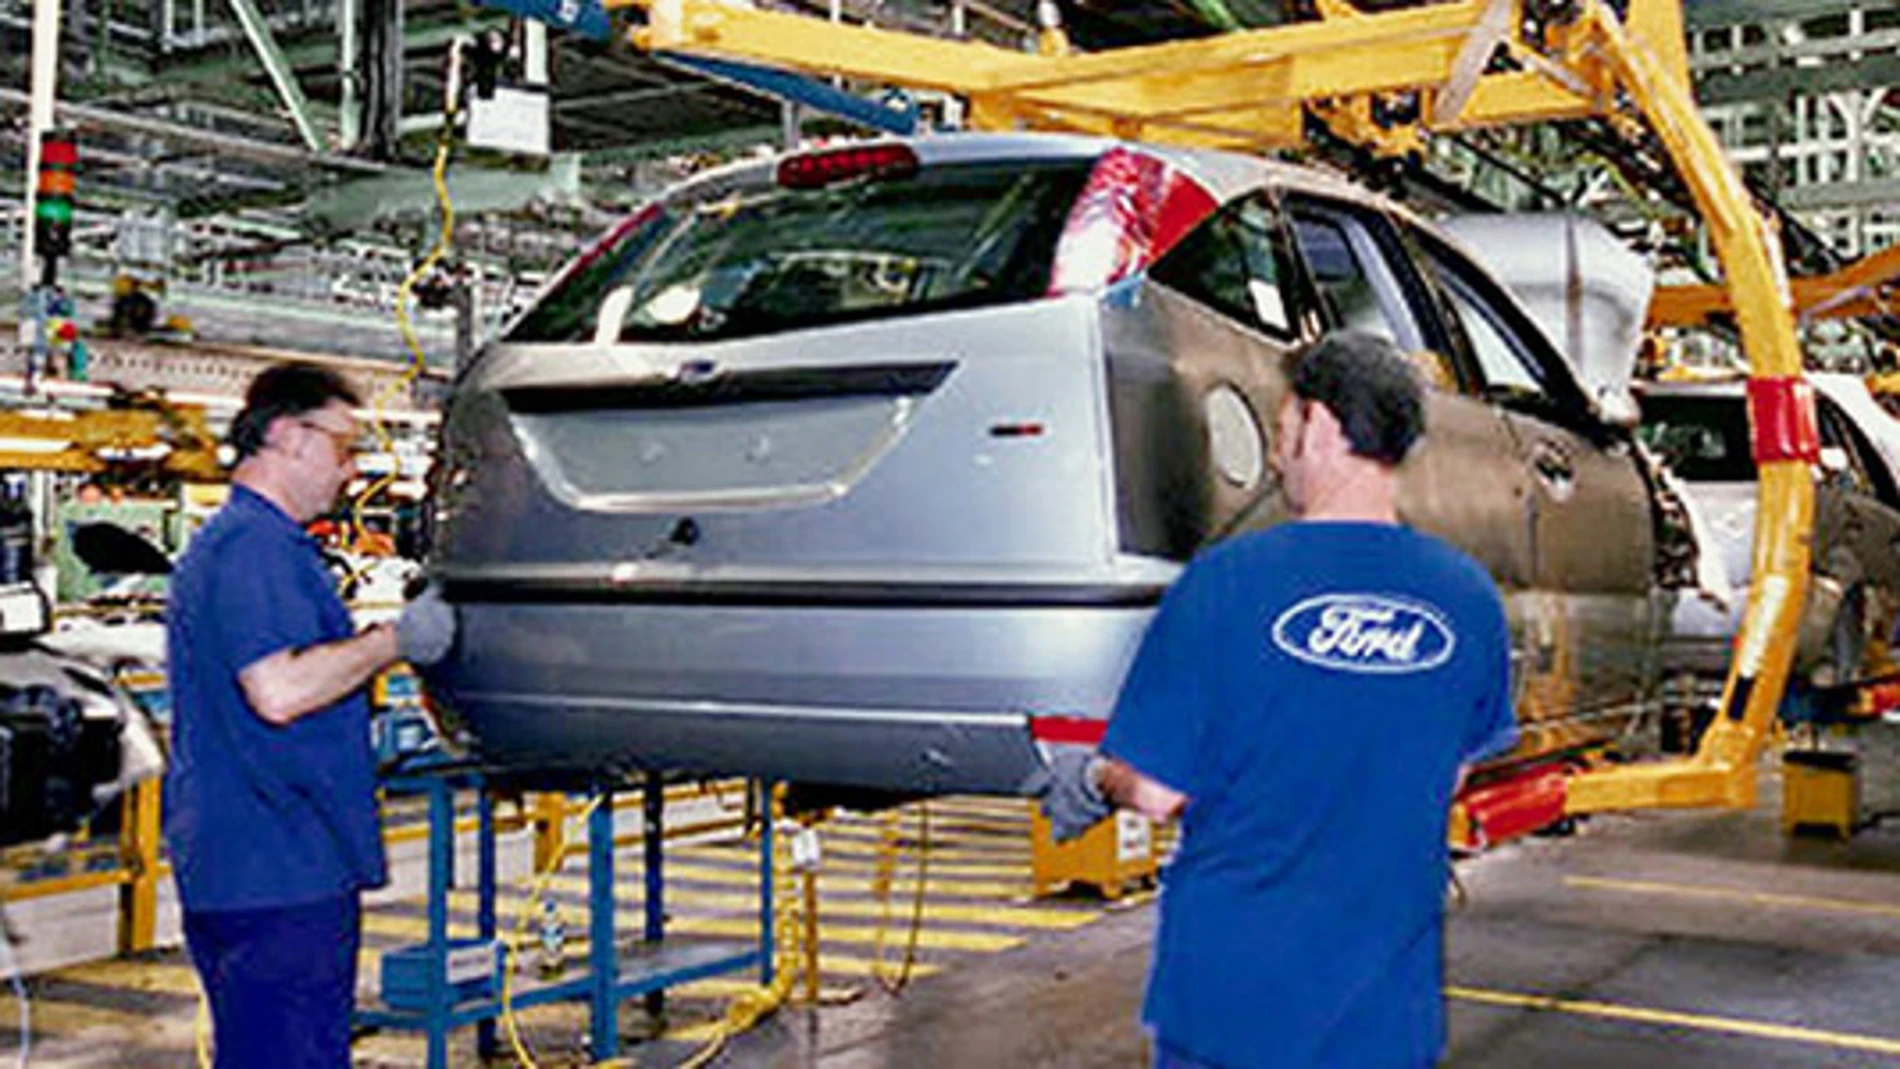 Imagen de la planta de producción de Ford Almussafes